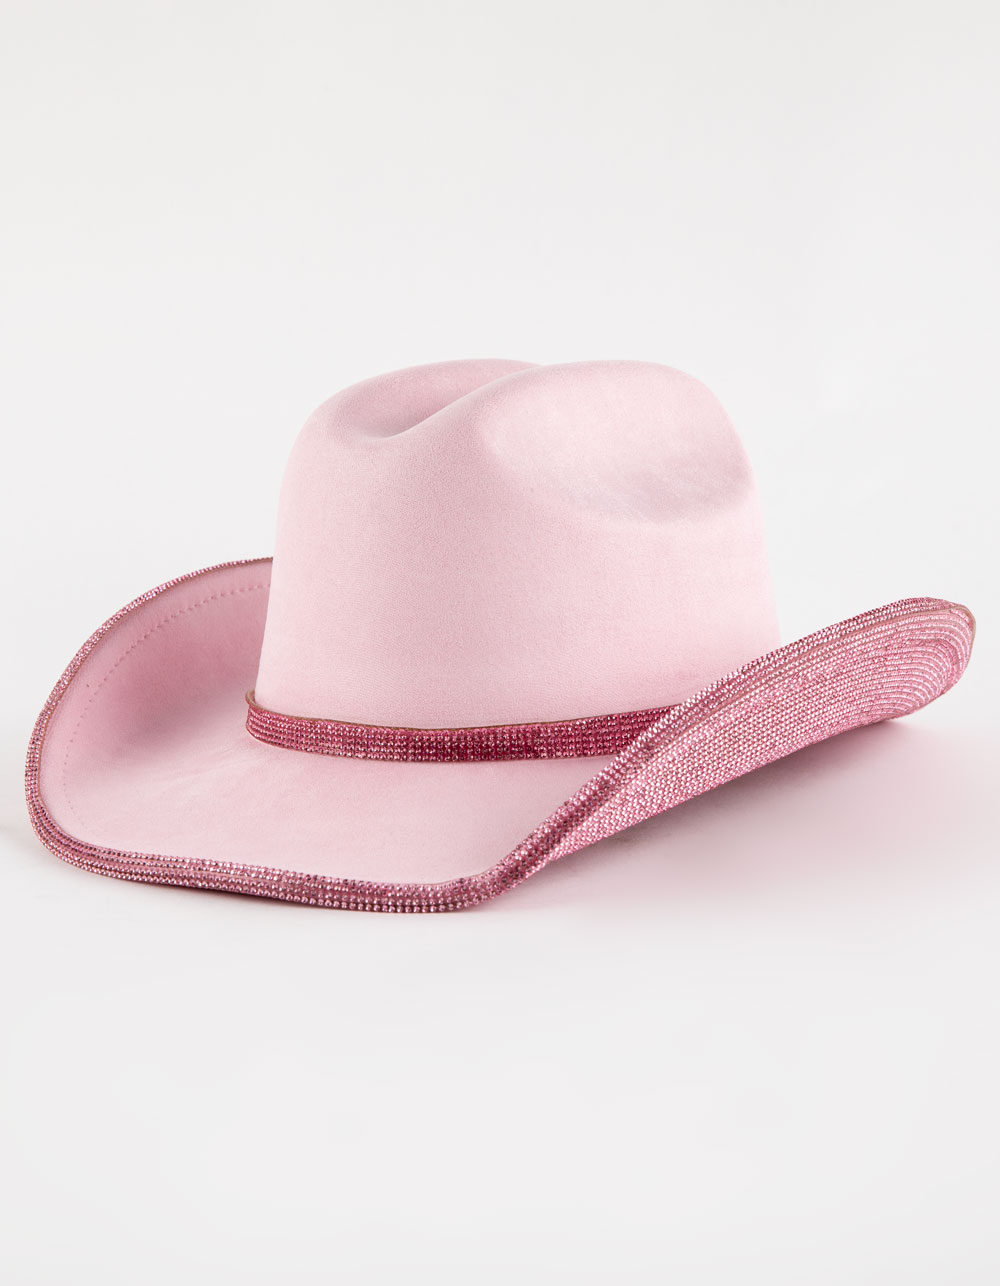 Rhinestone Womens Cowboy Hat